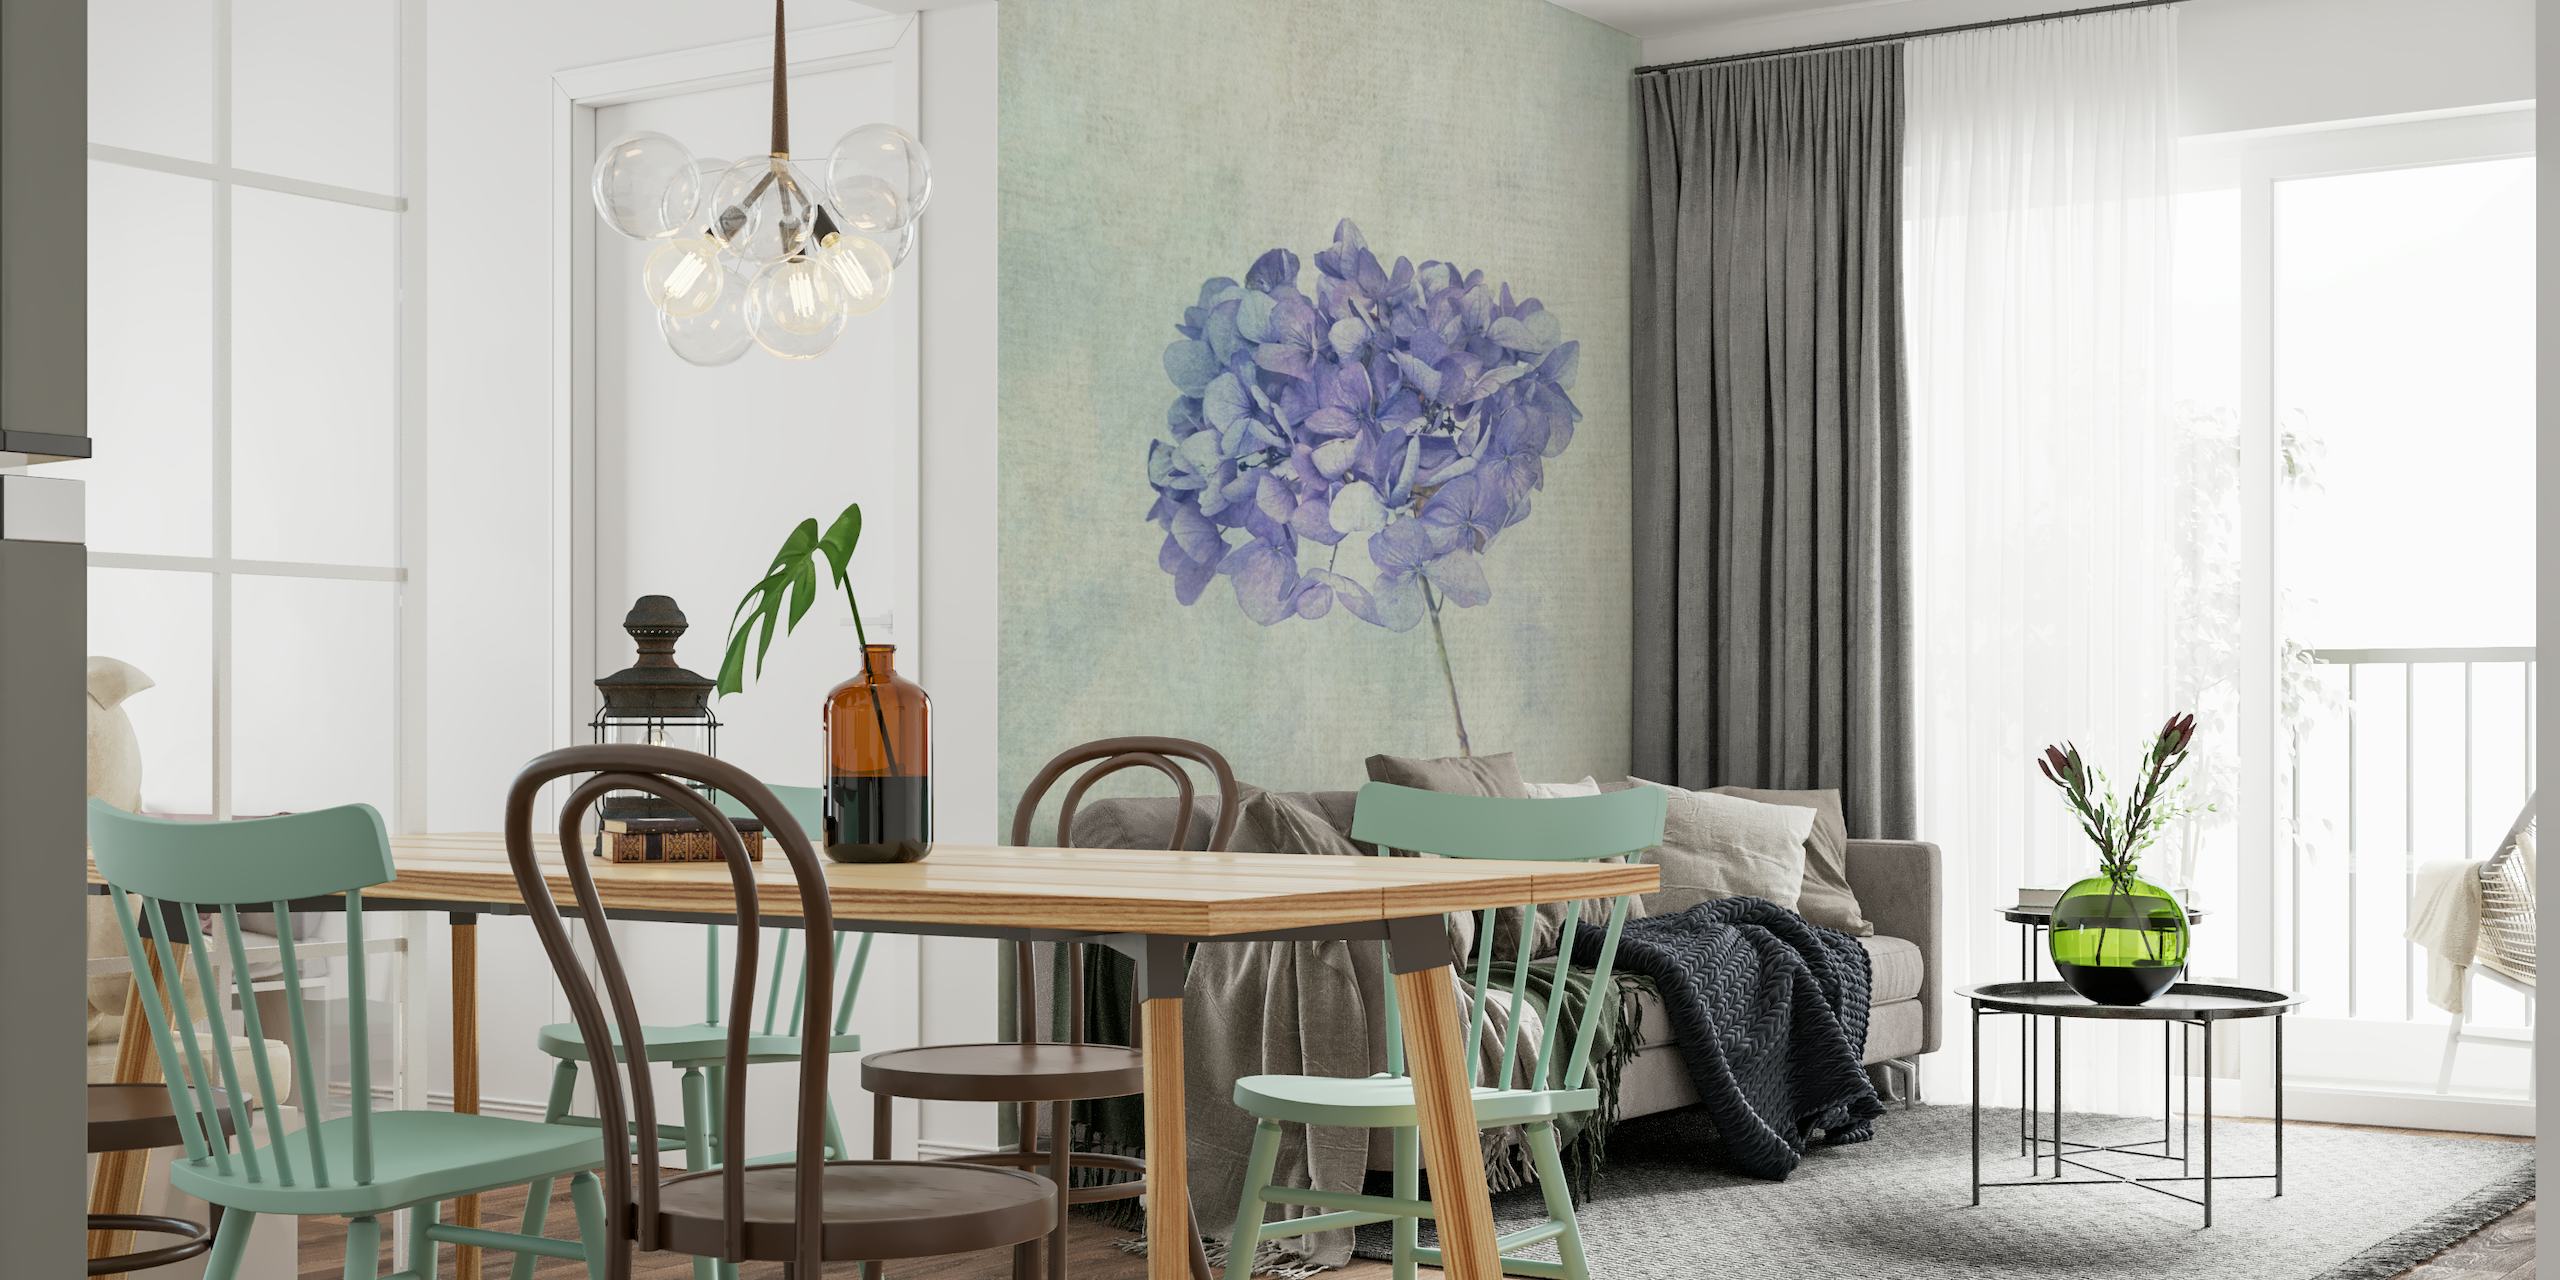 Beautiful Blue Hydrangea wallpaper